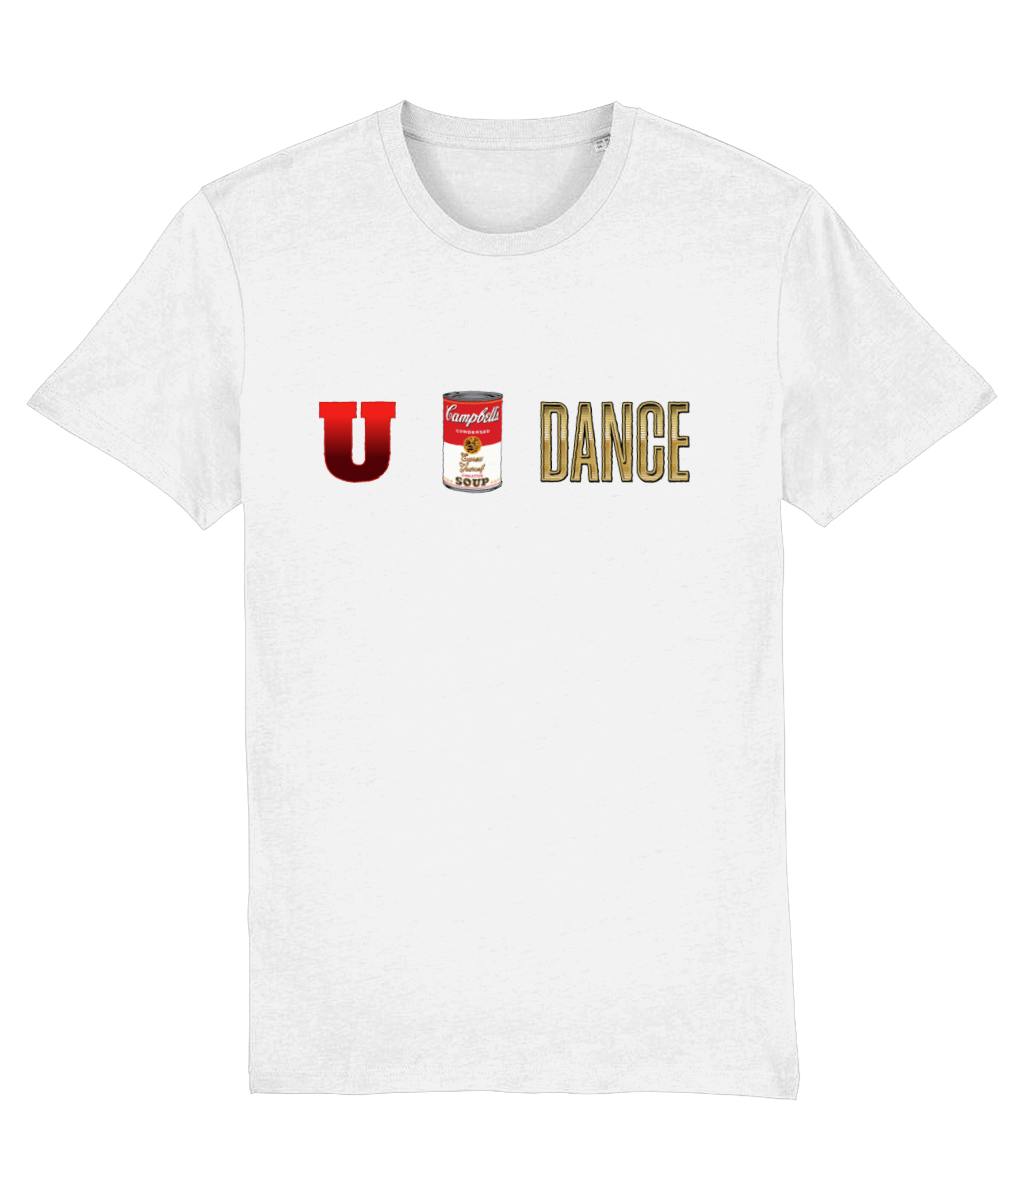 U Can Dance T-shirt Organic Cotton T-shirt